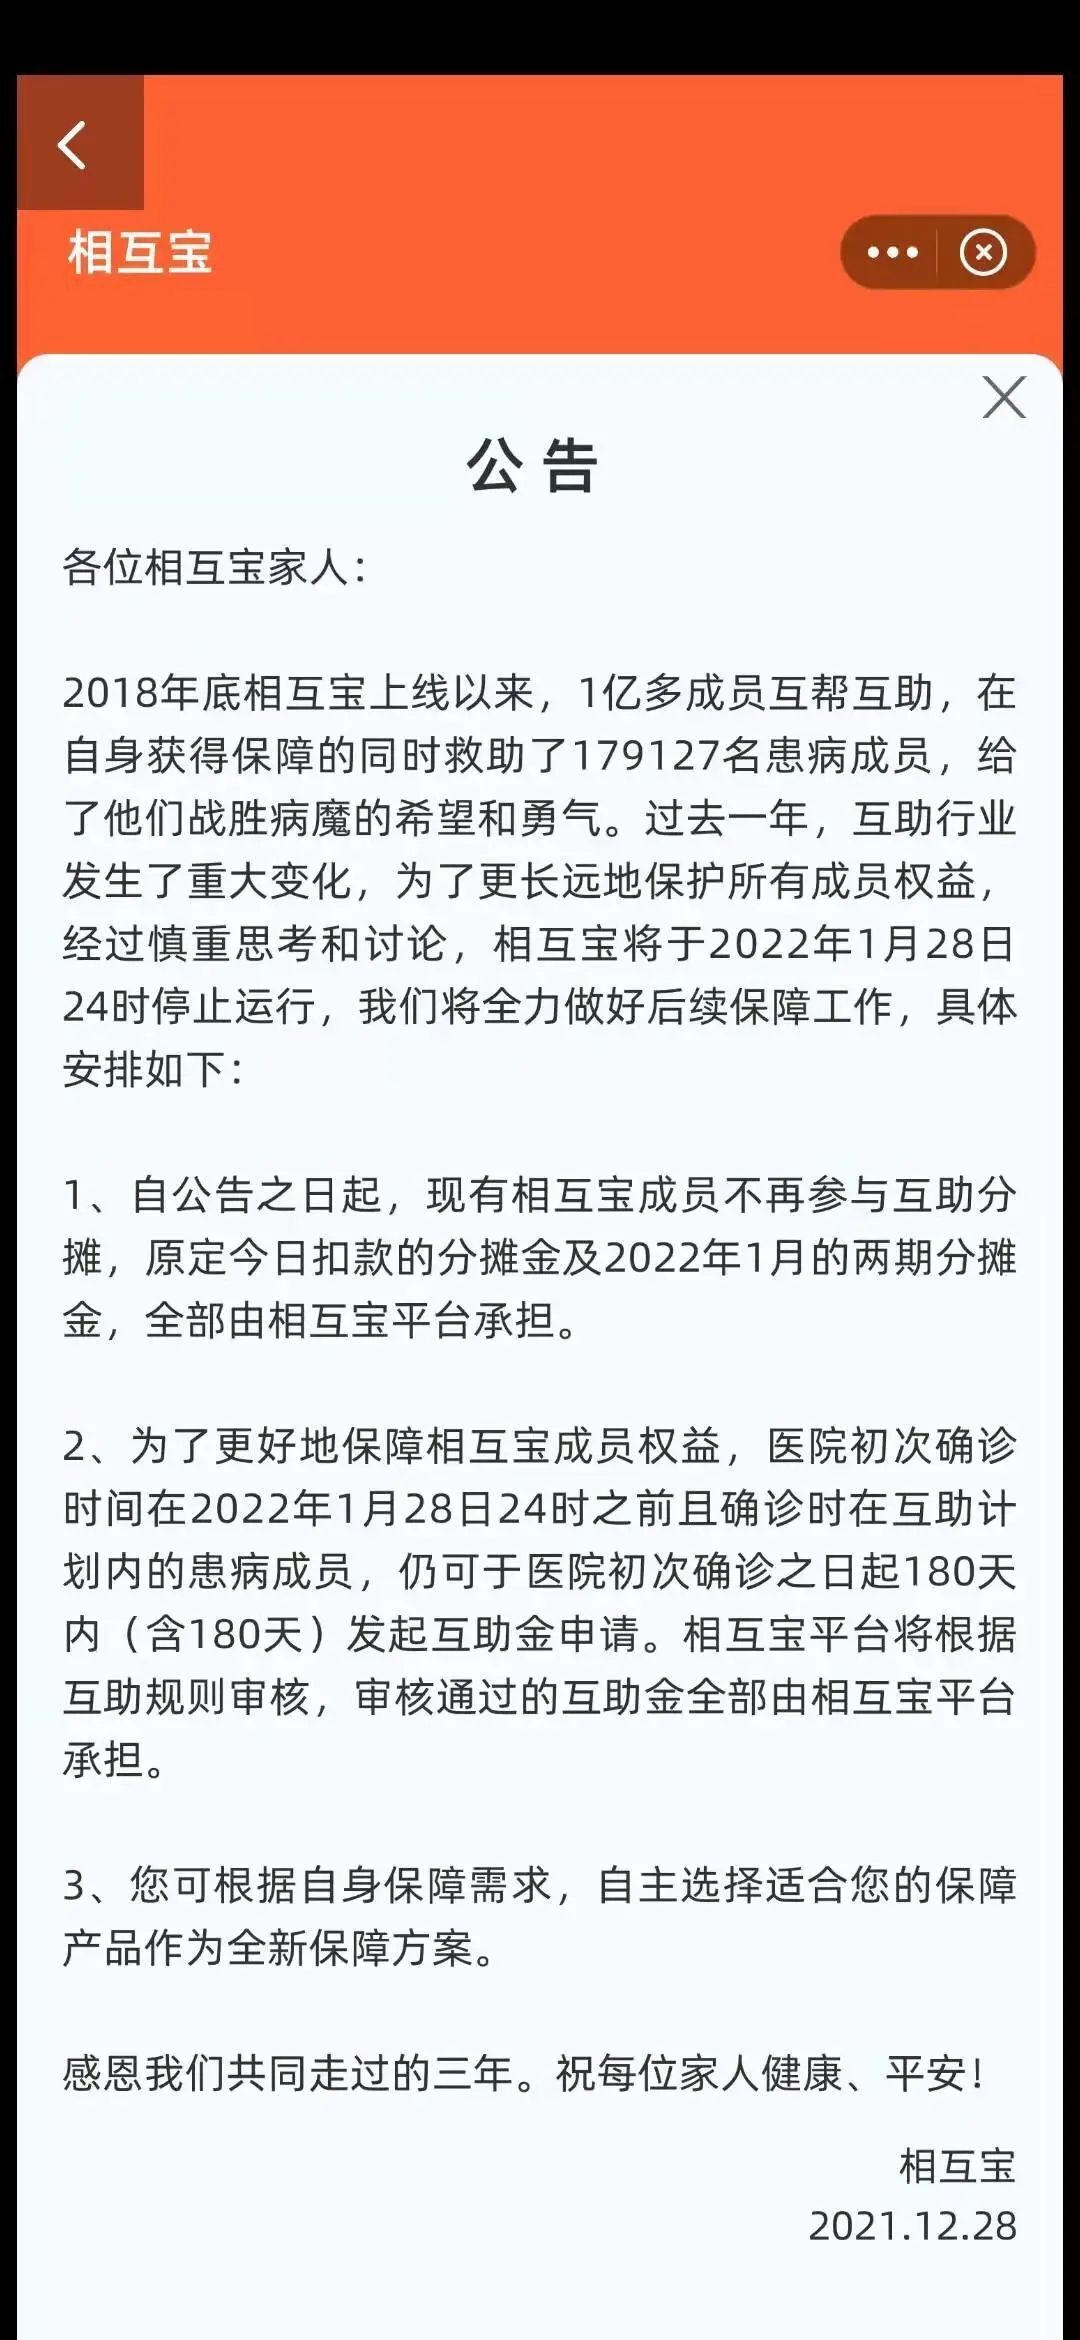 小米 12 系列正式发布 / 相互宝宣布 1 月关停 / 新东方直播卖农产品